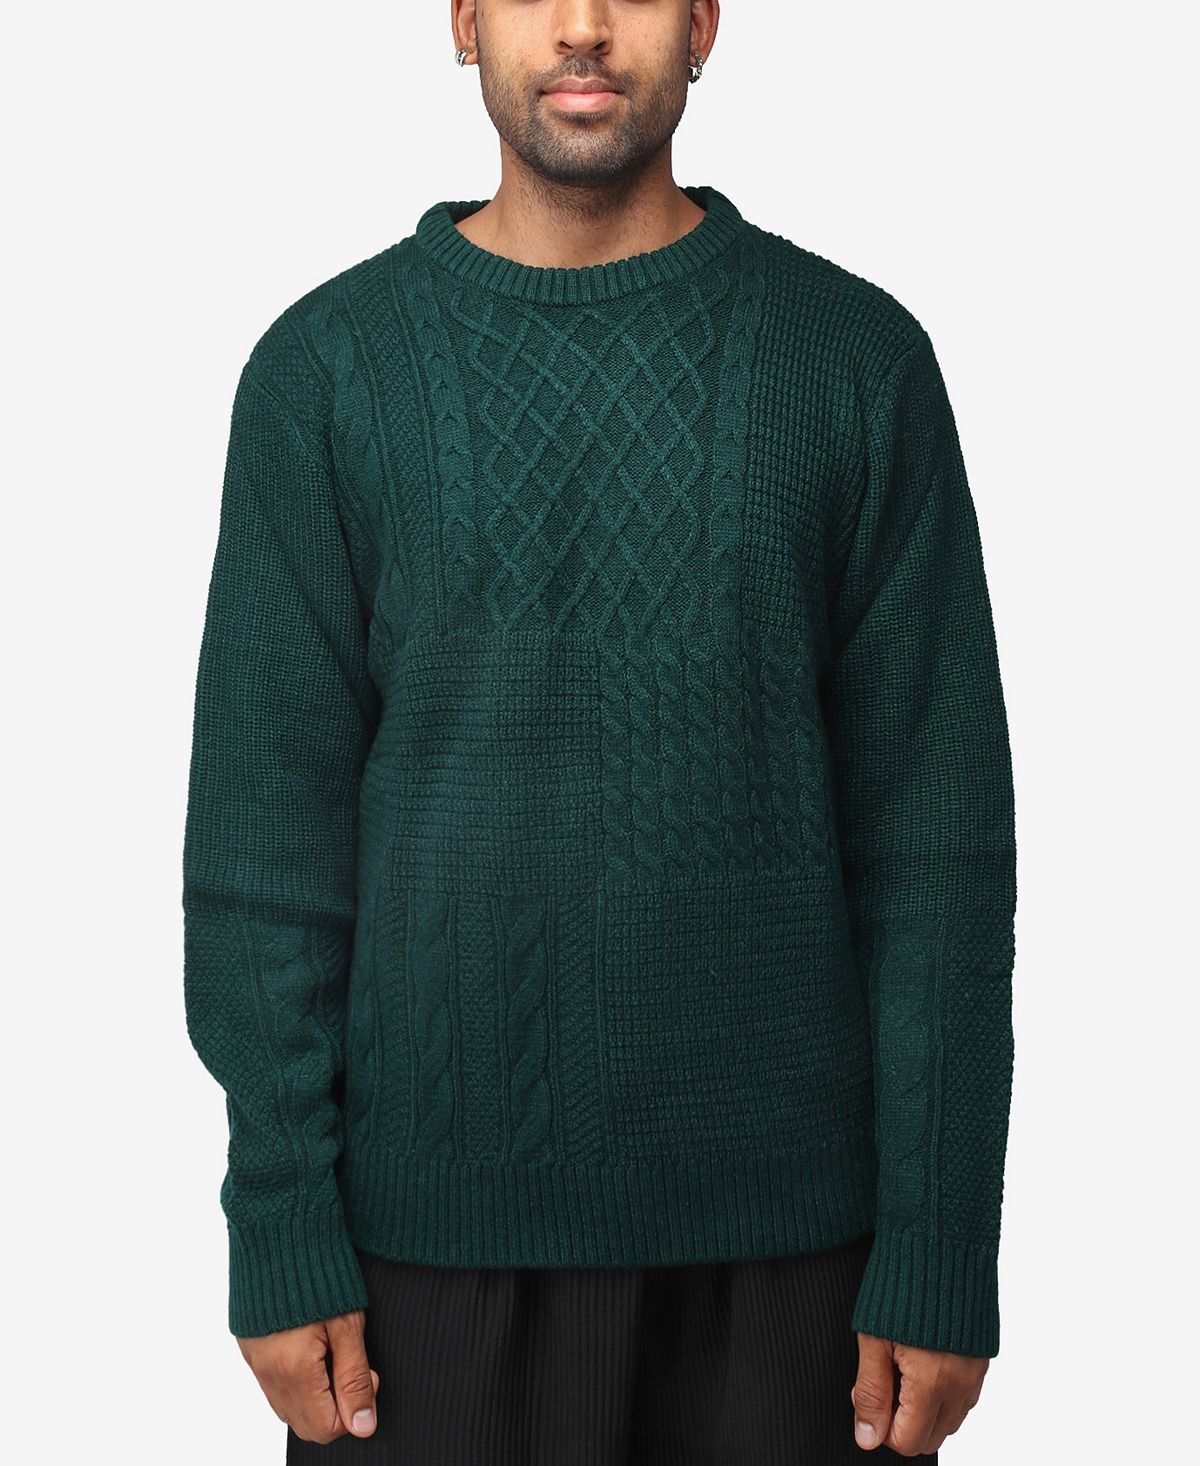 Мужской свитер разной фактуры с круглым вырезом X-Ray пуловер с круглым вырезом xxl зеленый